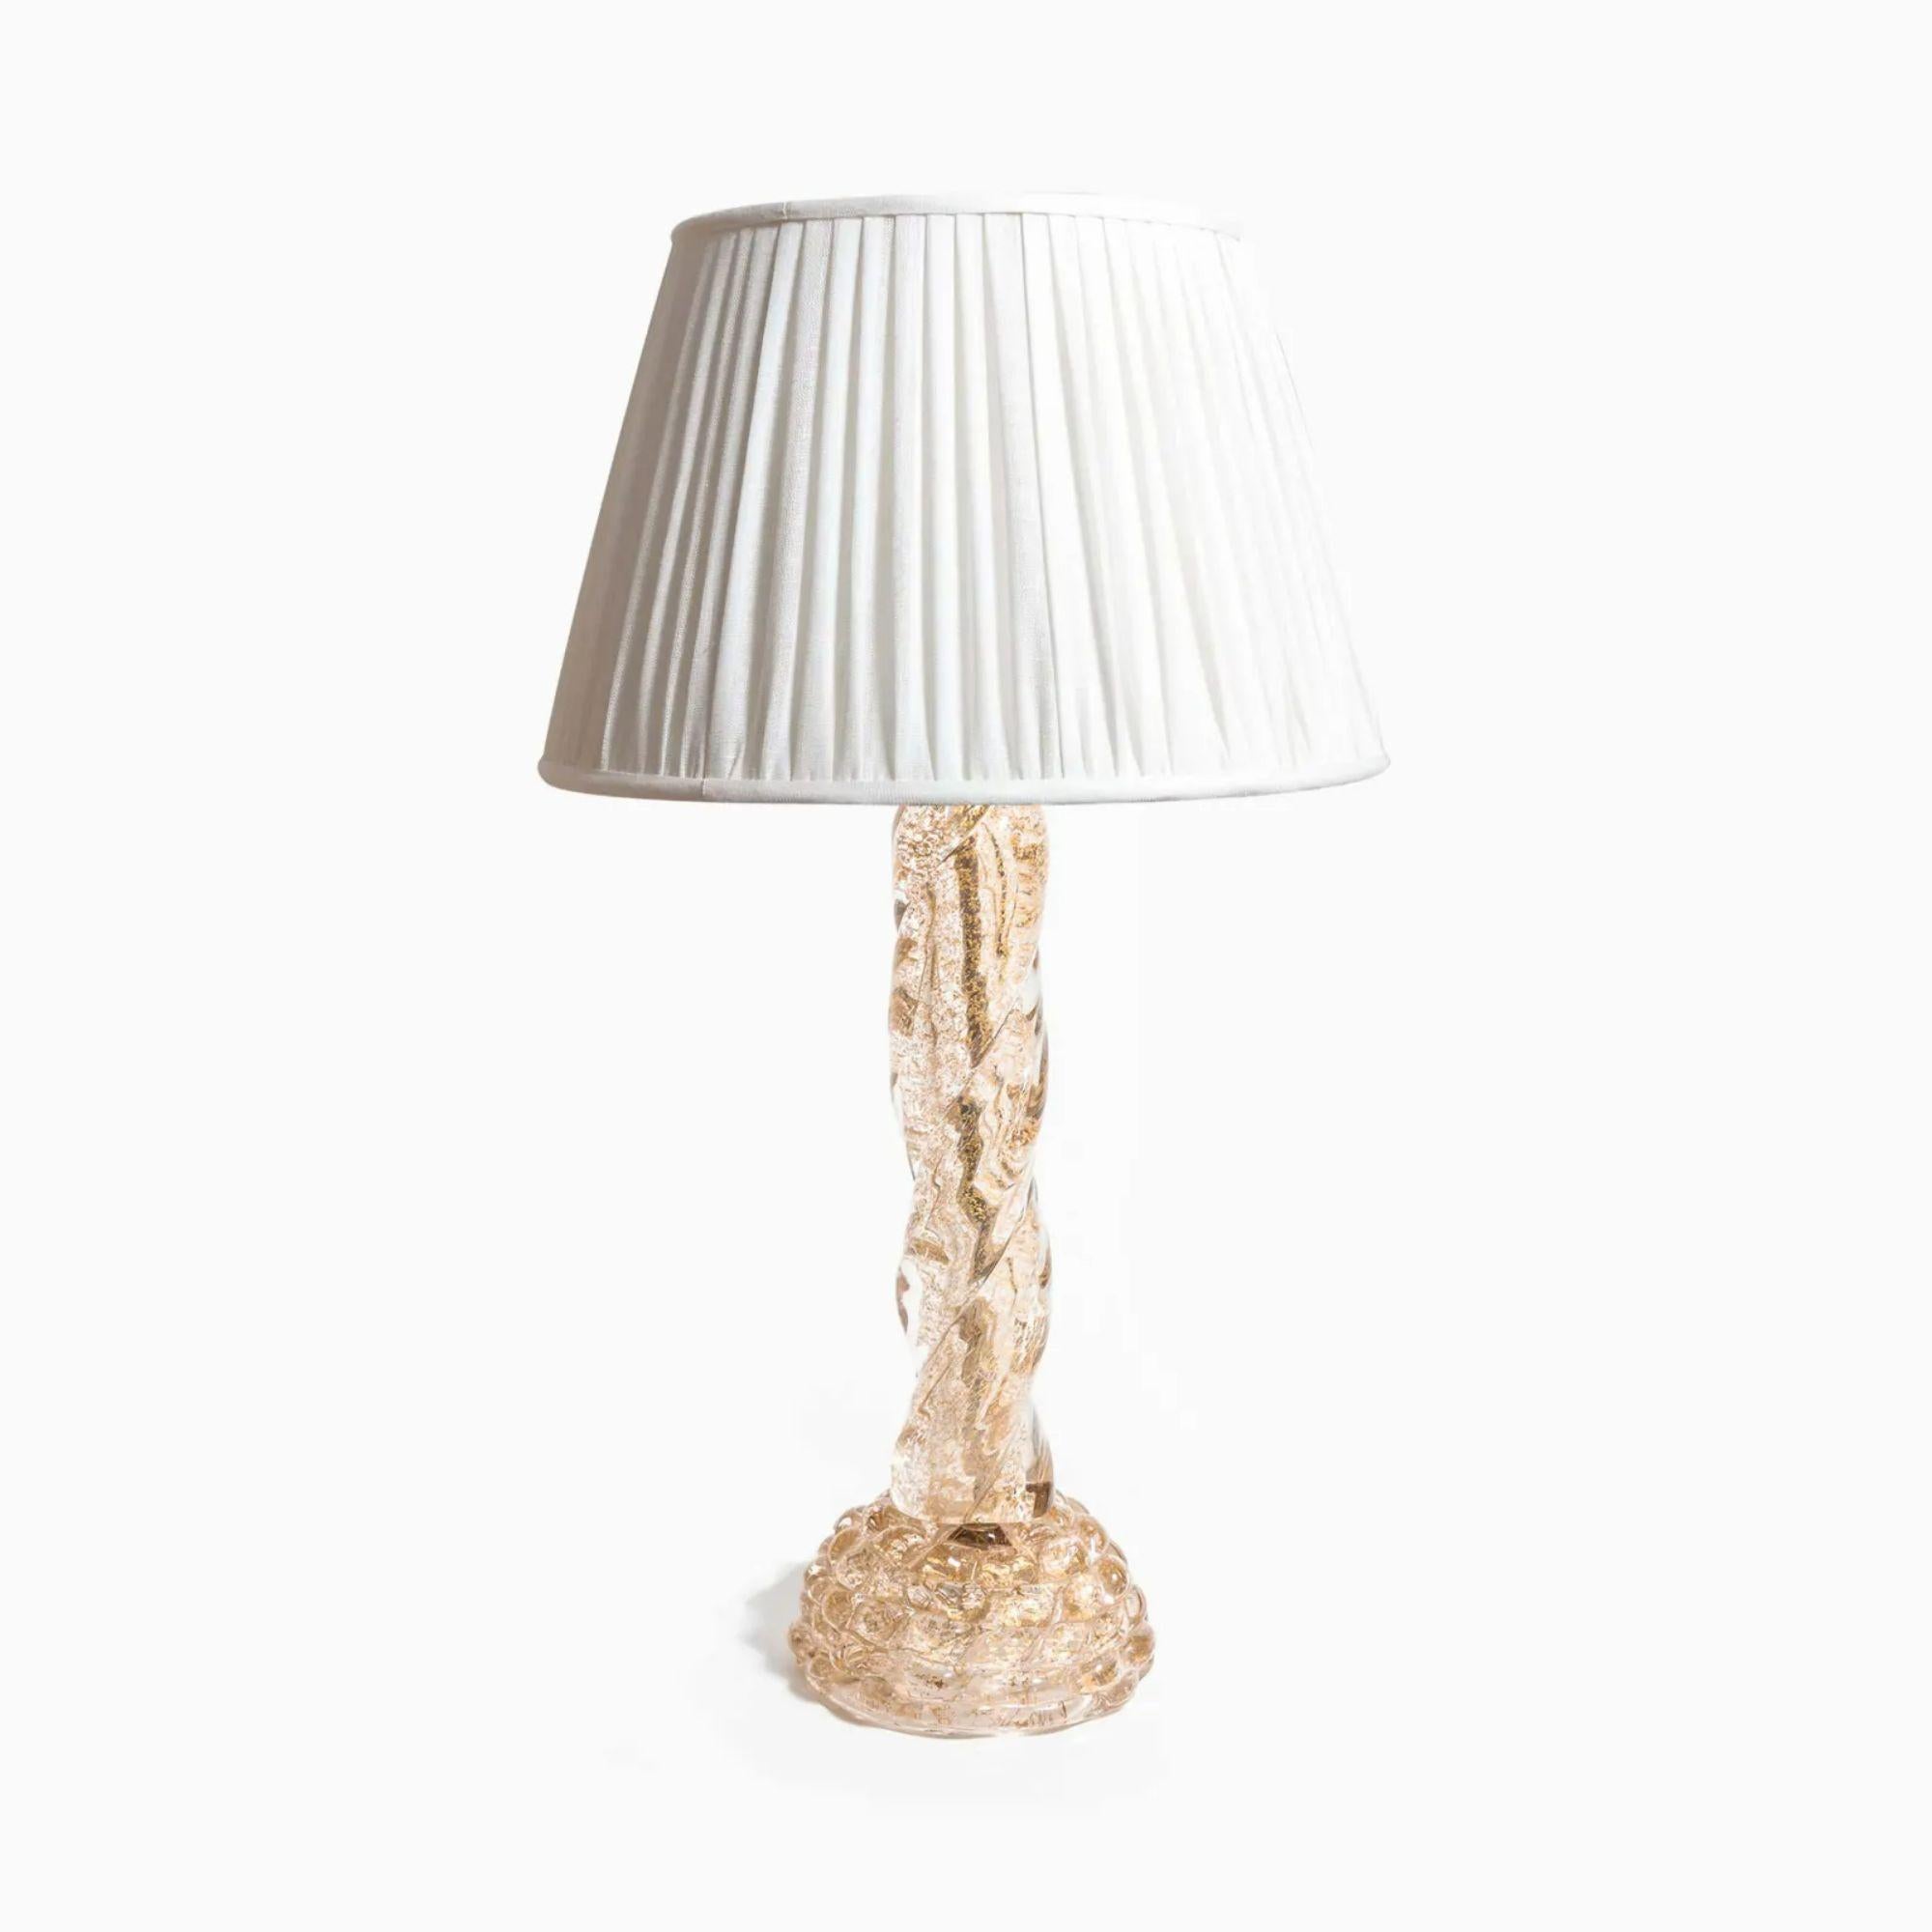 Italian Murano Table Lamp by Ercole Barovier for Barovier E Toso, circa 1940 For Sale